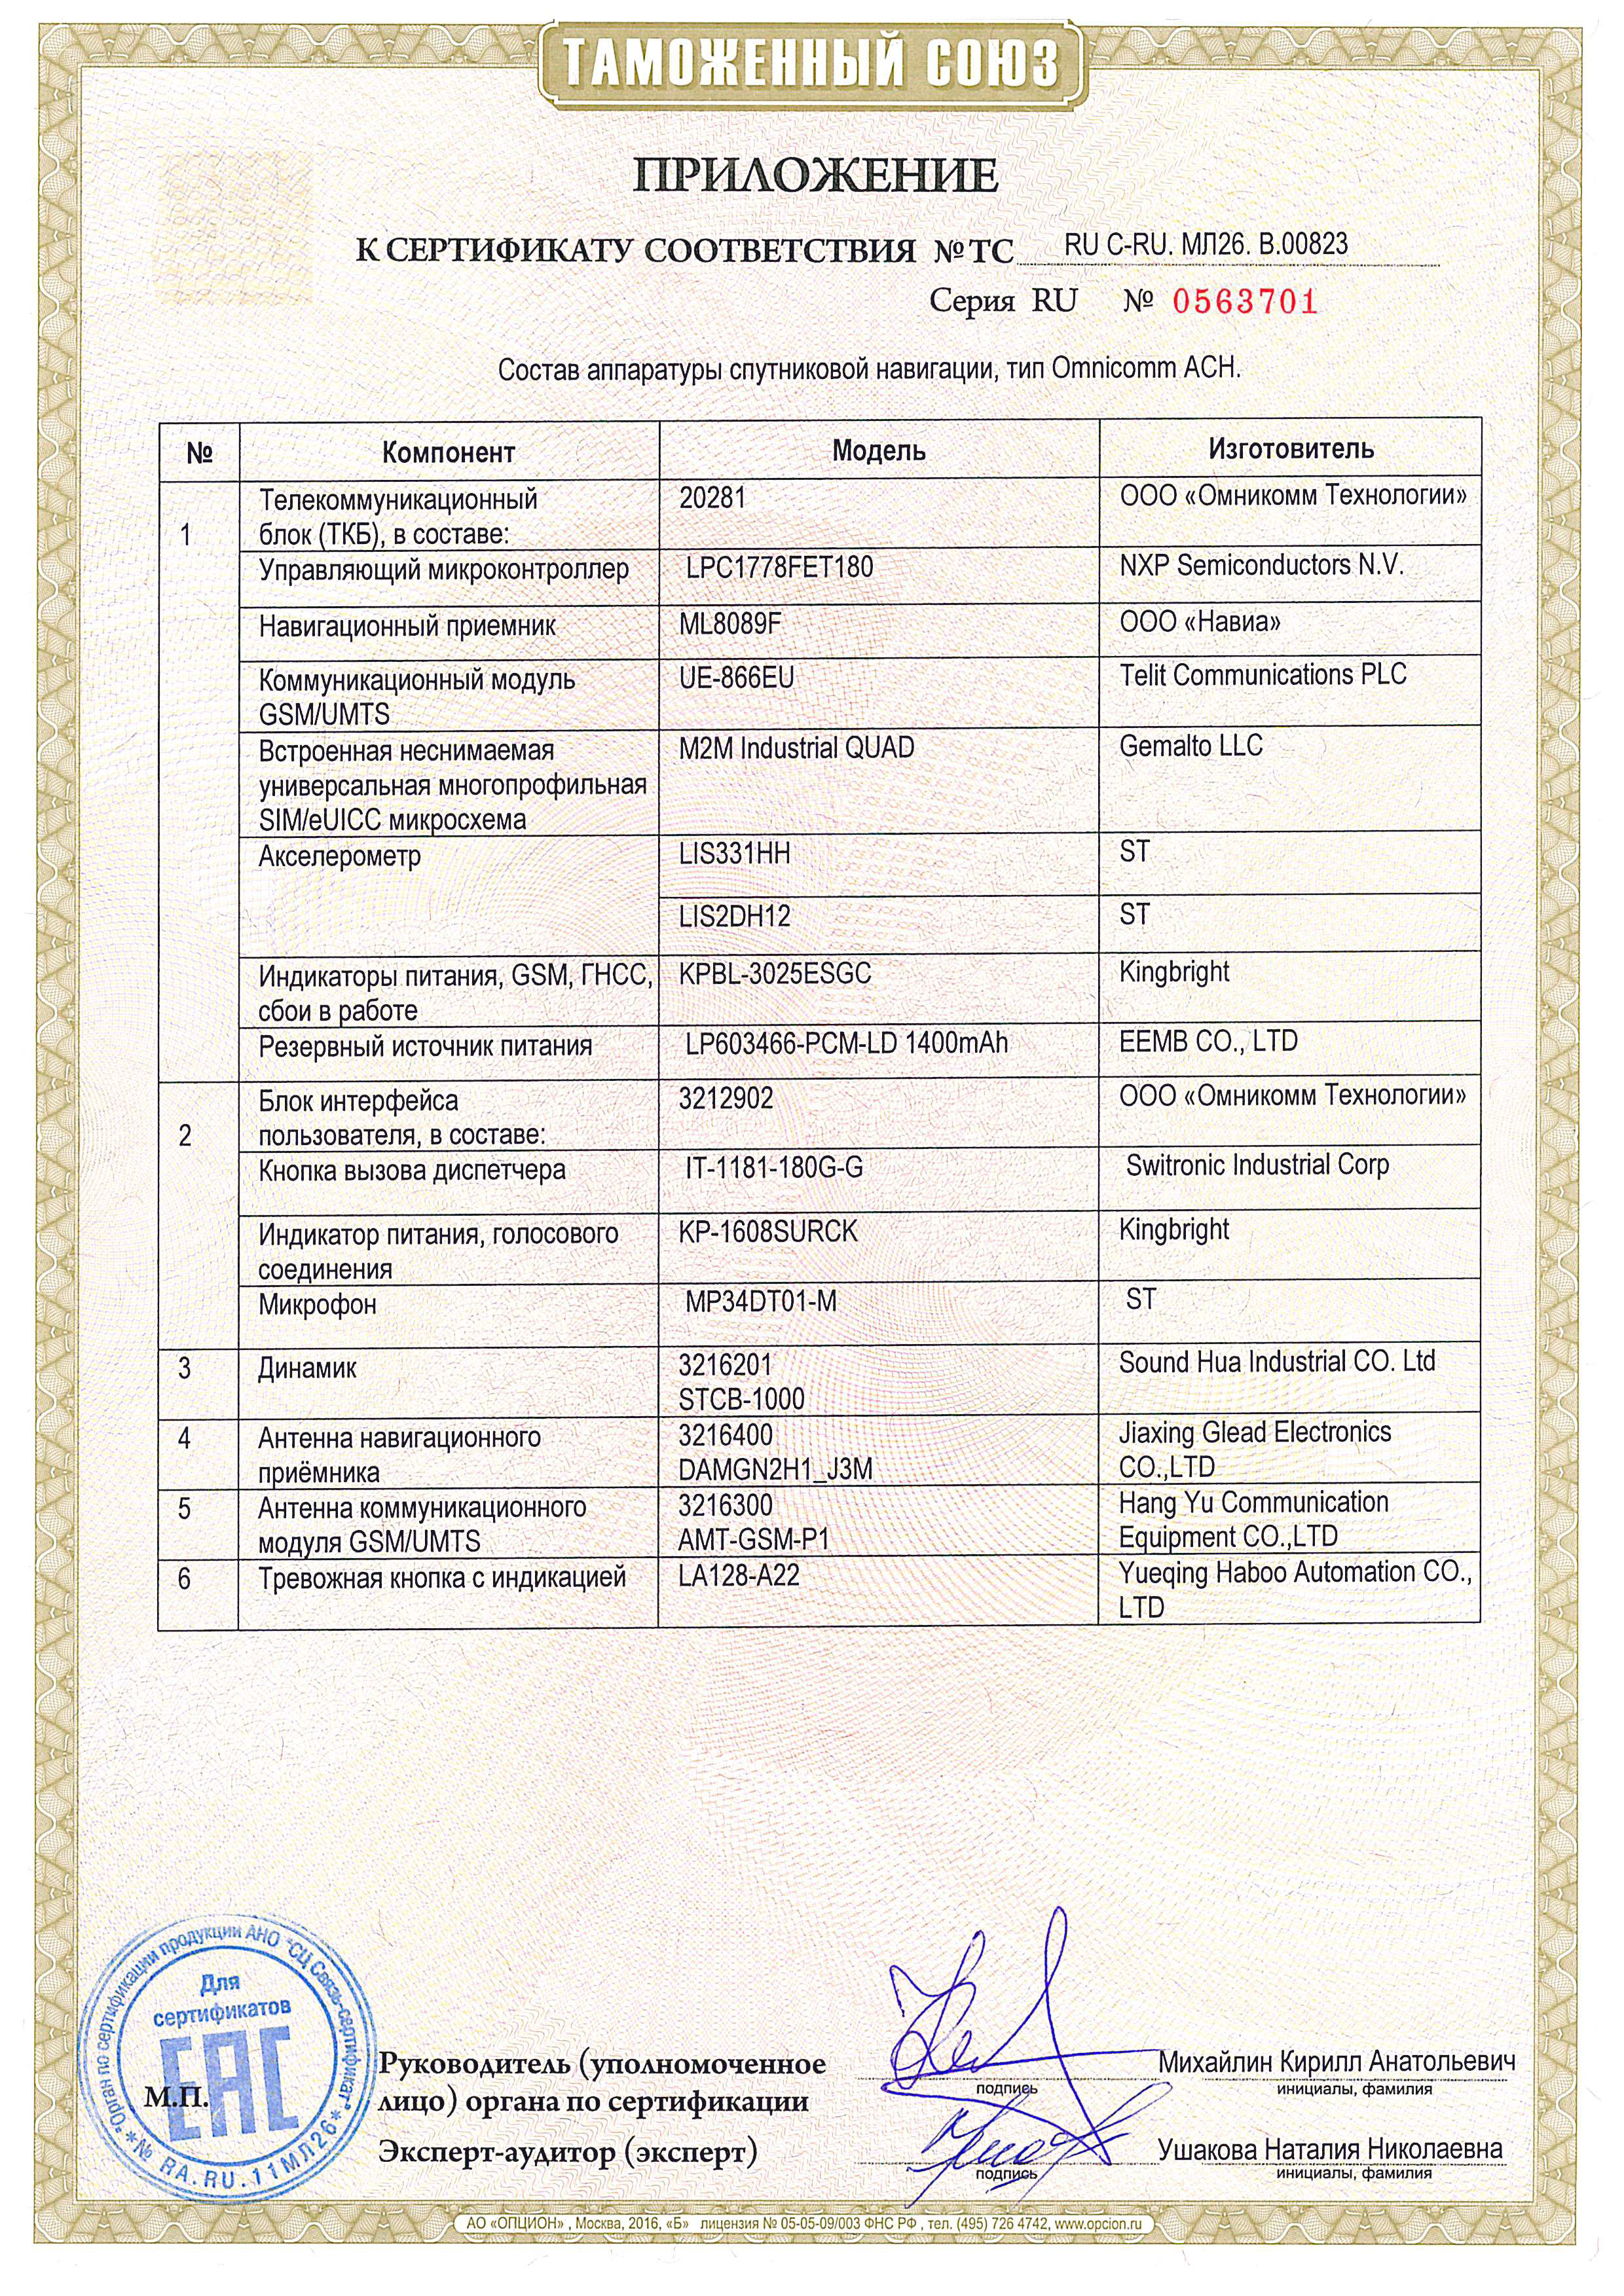 Приложение к сертификату соответствия требованиям ТР ТС 018 2011